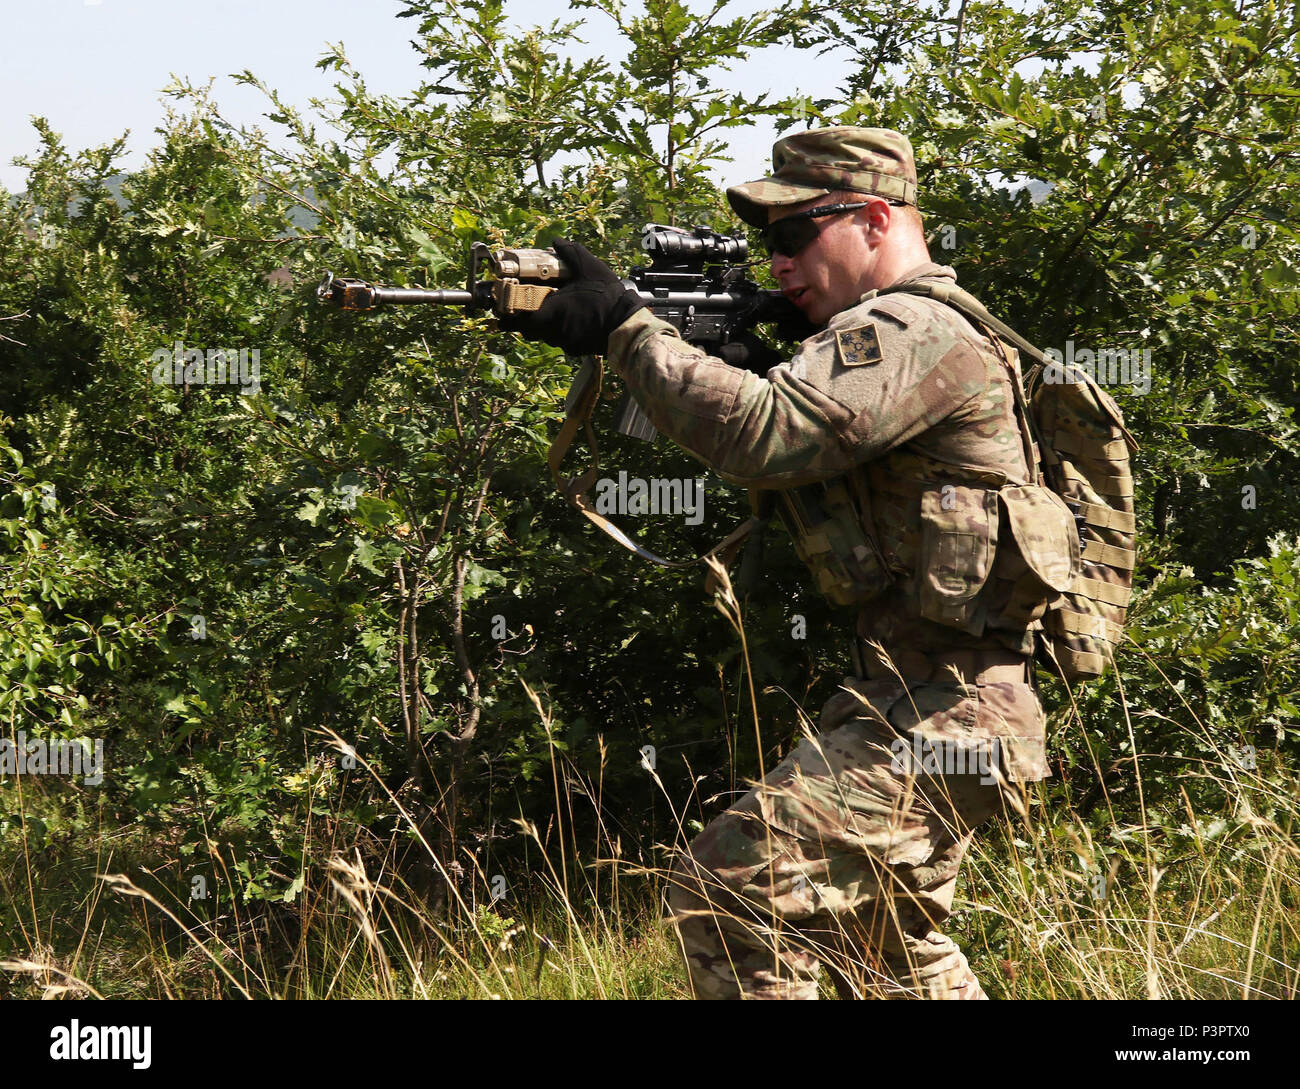 La CPS. Timothy Squires, un fantassin affecté au 1er Bataillon, 41e Régiment d'infanterie, 2e Brigade Combat Team, scanne son secteur de feu pour tout mouvement pendant une escouade de la situation au niveau de l'exercice de formation tenu à Dumnice, au Kosovo, le 25 juillet 2016. Le but de l'exercice était de former des mouvements de l'escouade en préparation à une plus grande échelle l'opération considérée comme Iron Eagle, plus tard cette année. (U.S. Le personnel de l'Armée Photo : Sgt. Thomas Duval, Bataille multinationales Group-East Affaires publiques) Banque D'Images